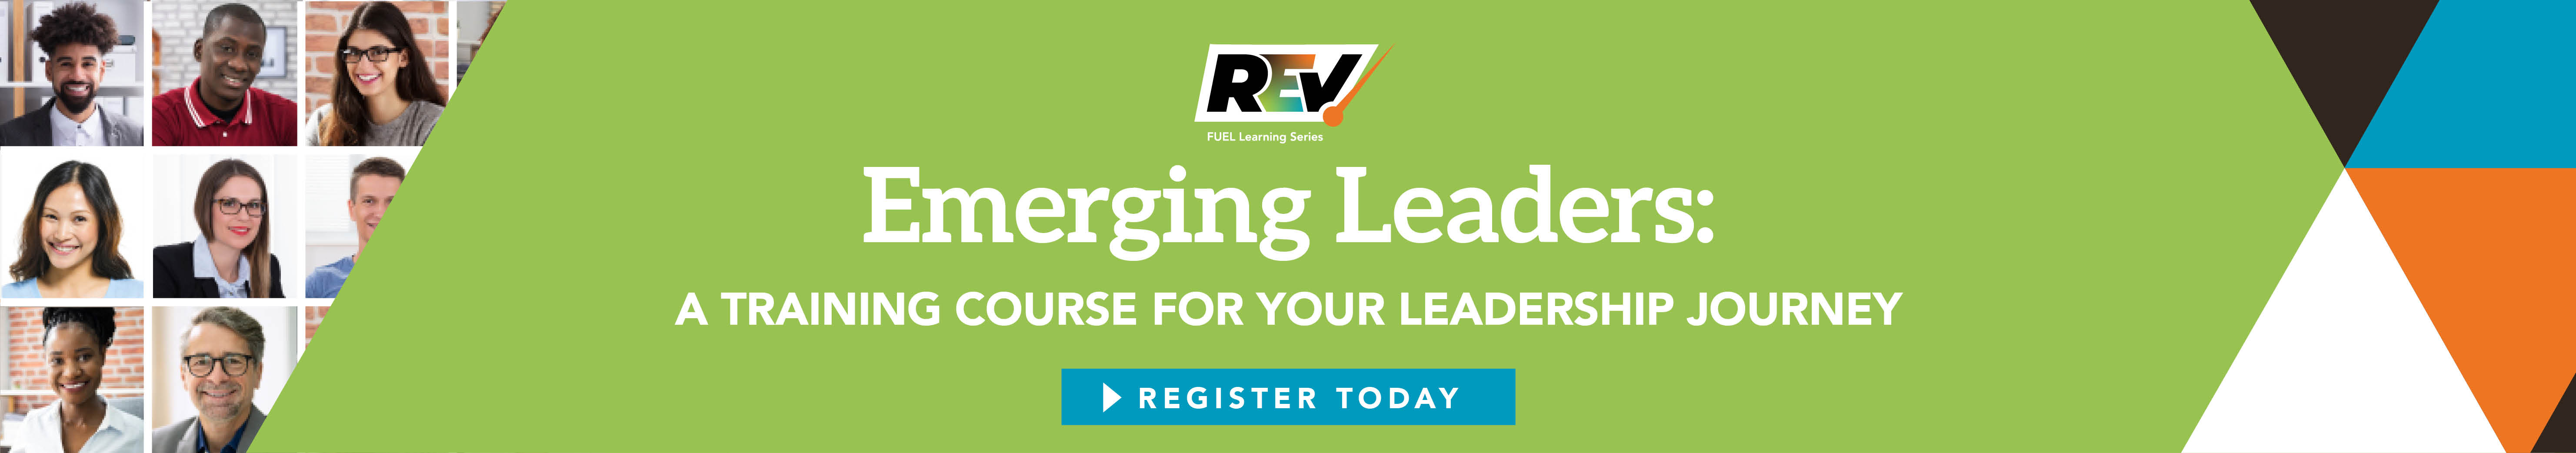 Emerging Leaders 22 Web Header